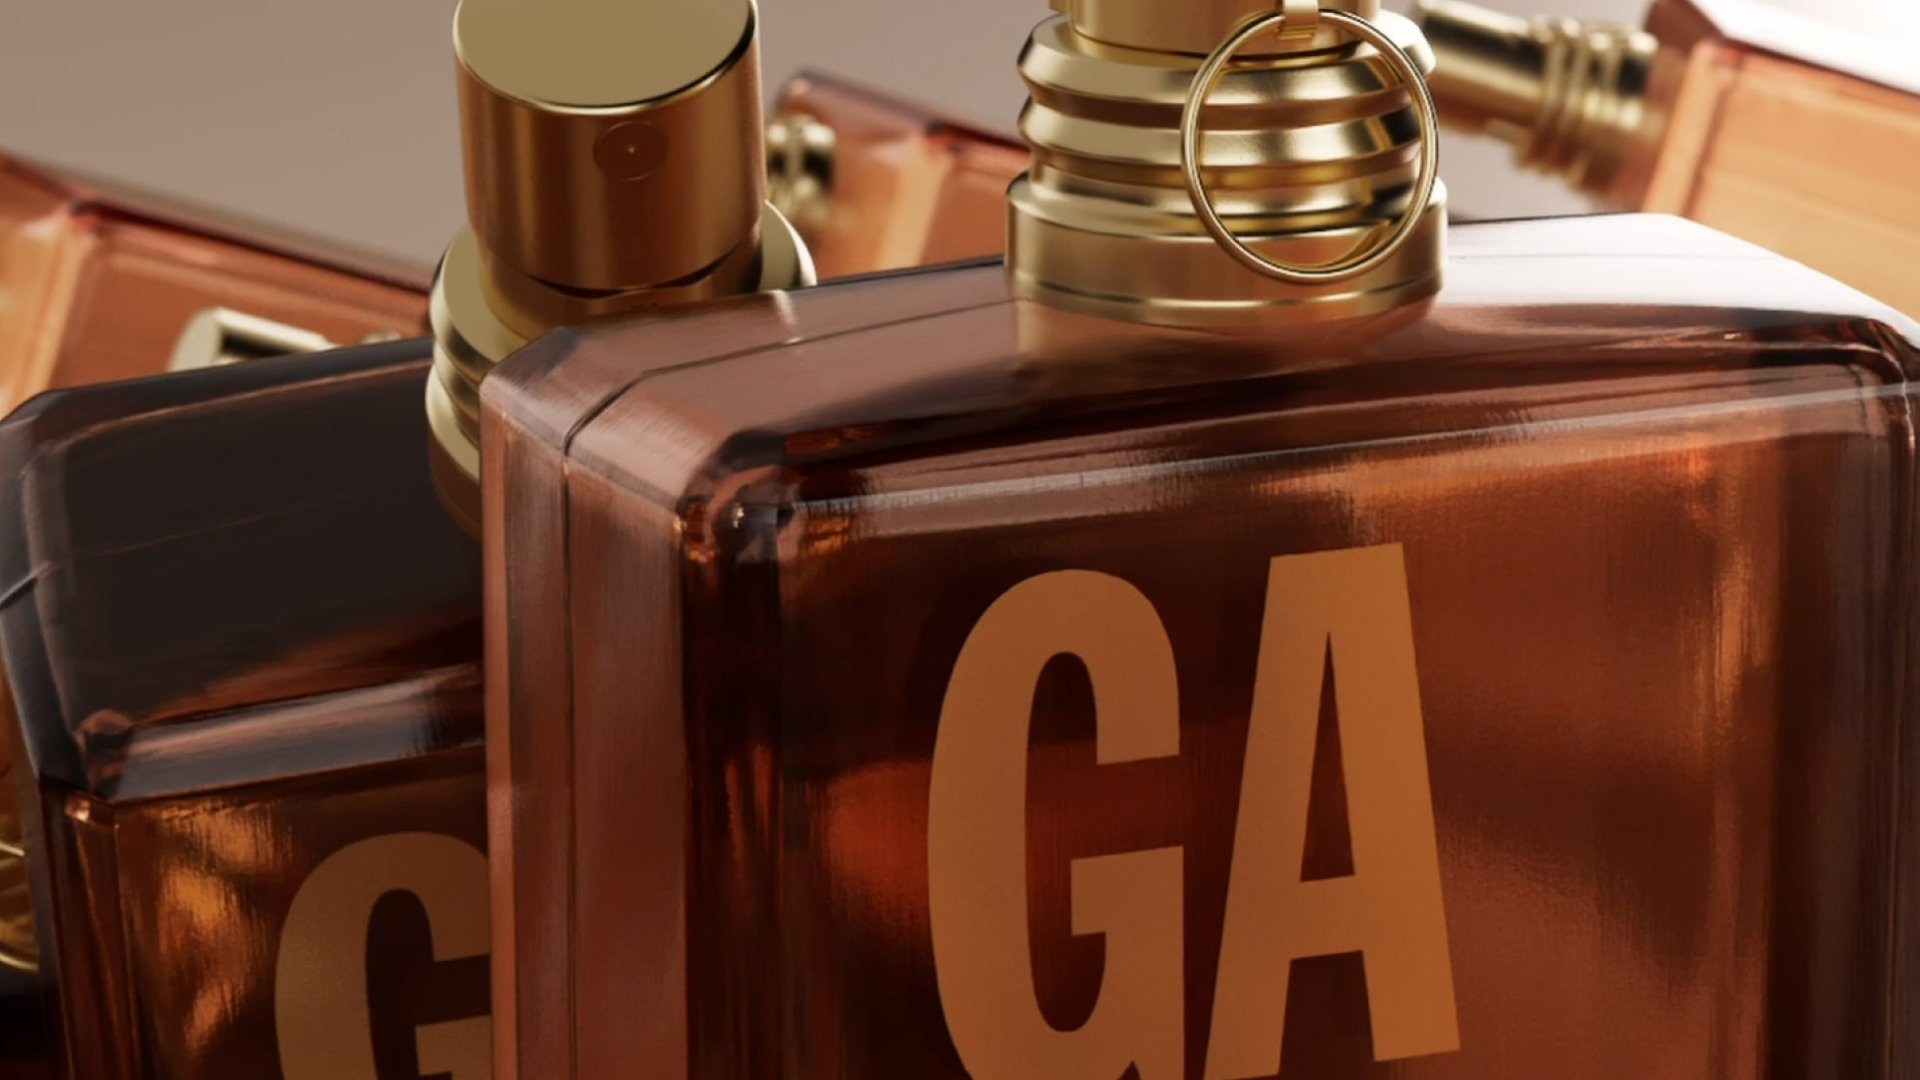 gaultier2 fragrance by Jean Paul Gaultier